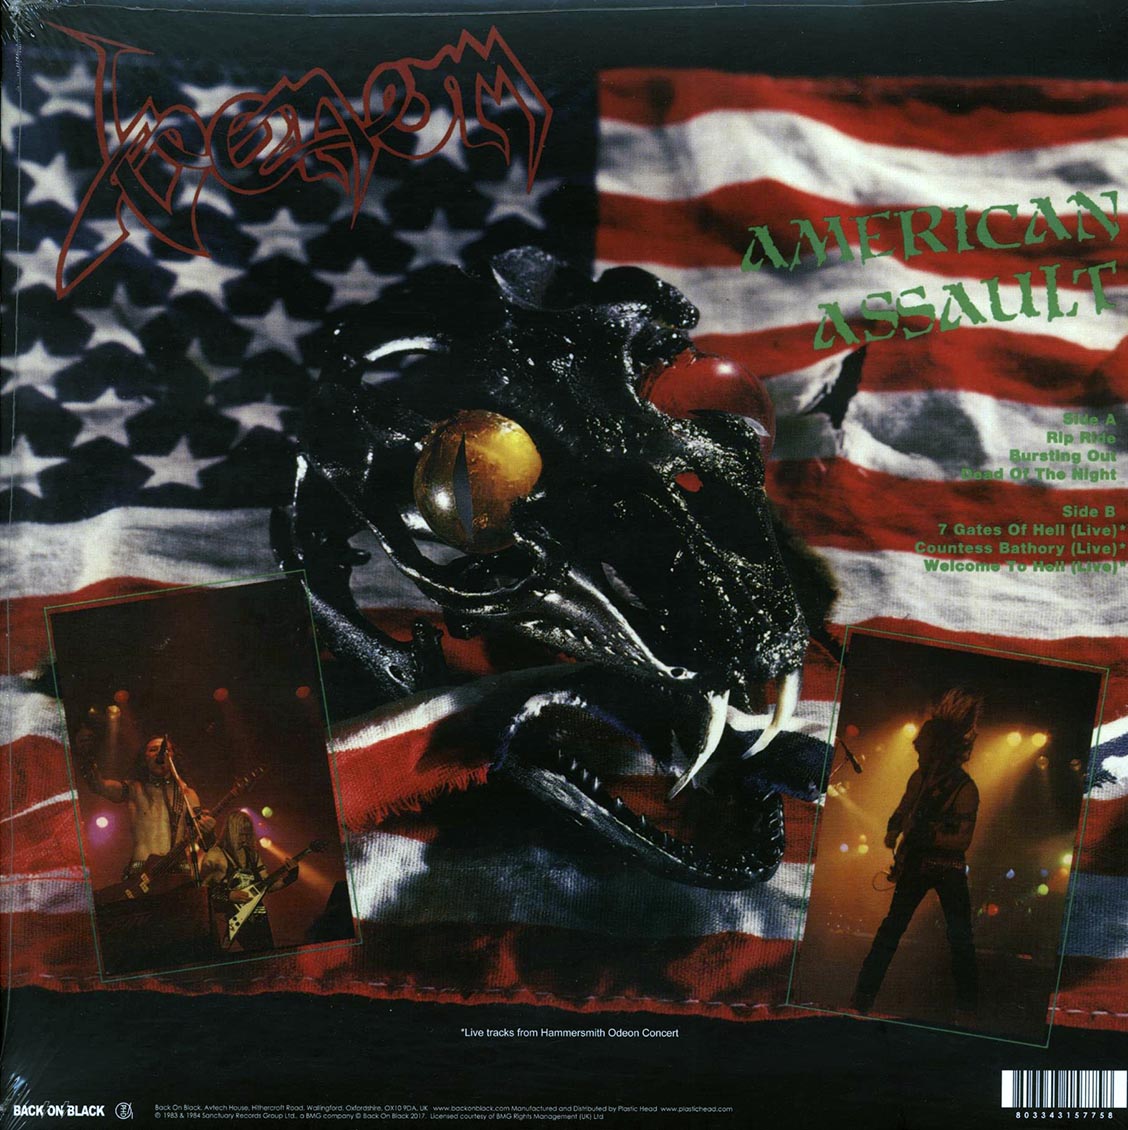 Venom - American Assault (ltd. ed.) (splatter vinyl) - Vinyl LP, LP